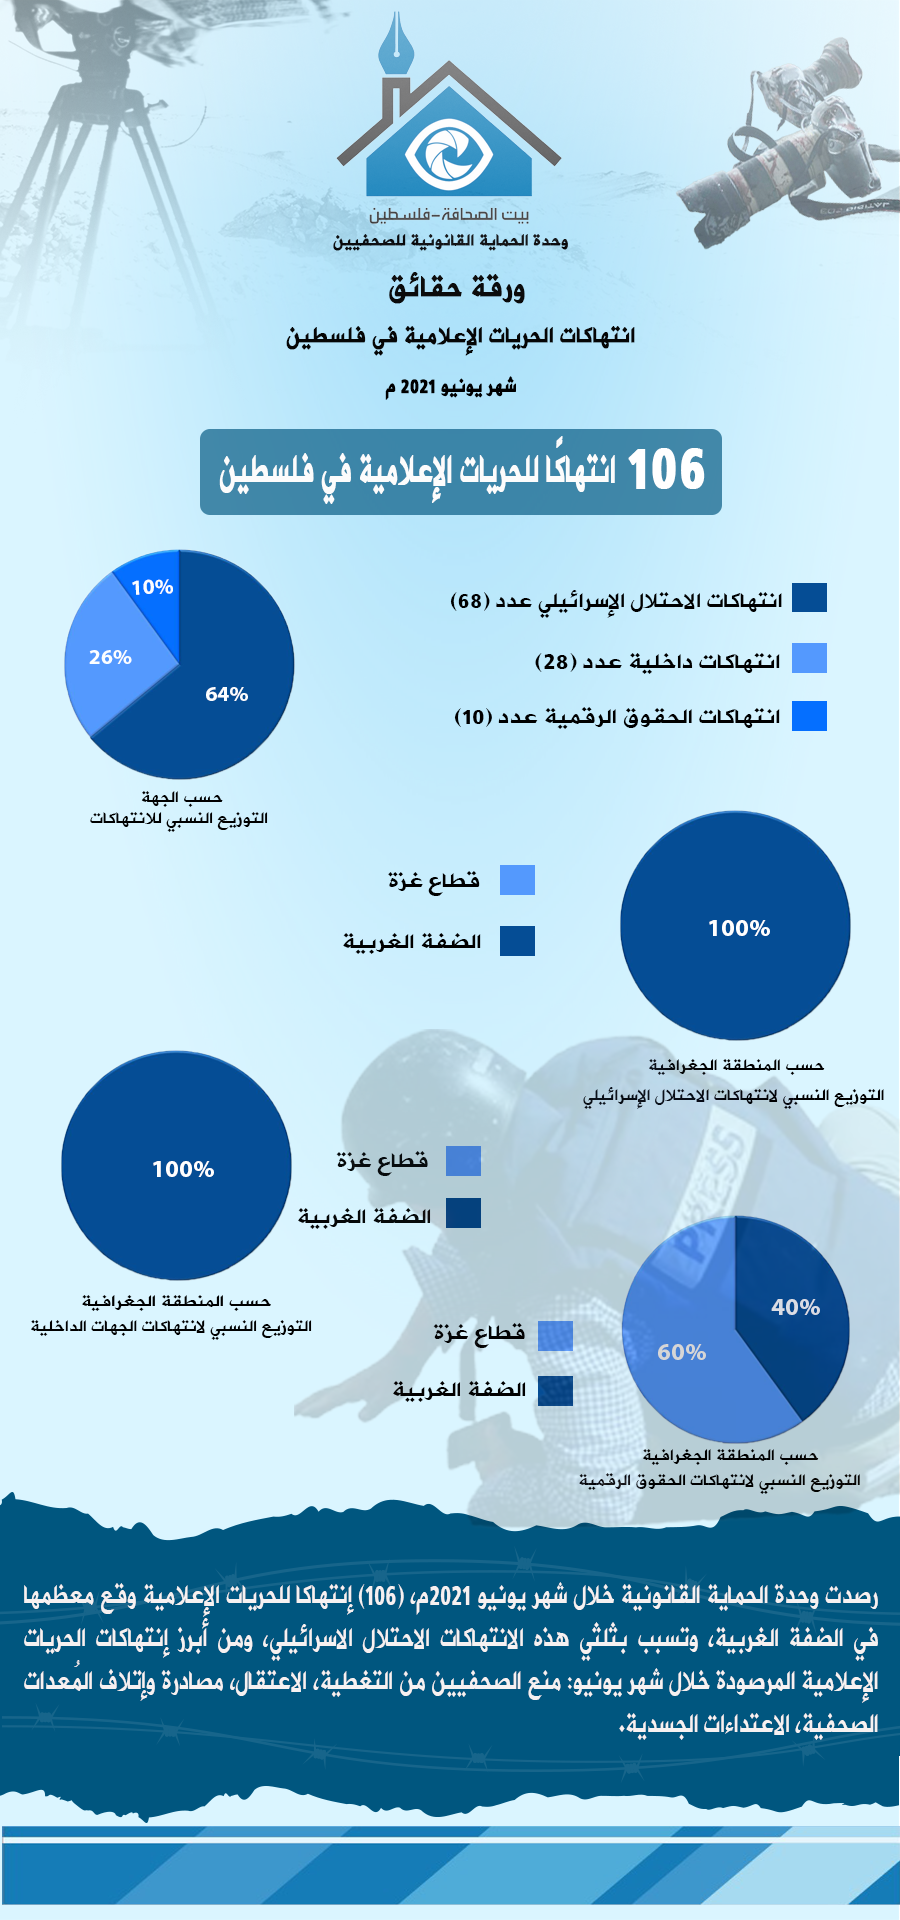 ورقة حقائق شهر 6 يونيو 2021 - عربي.png